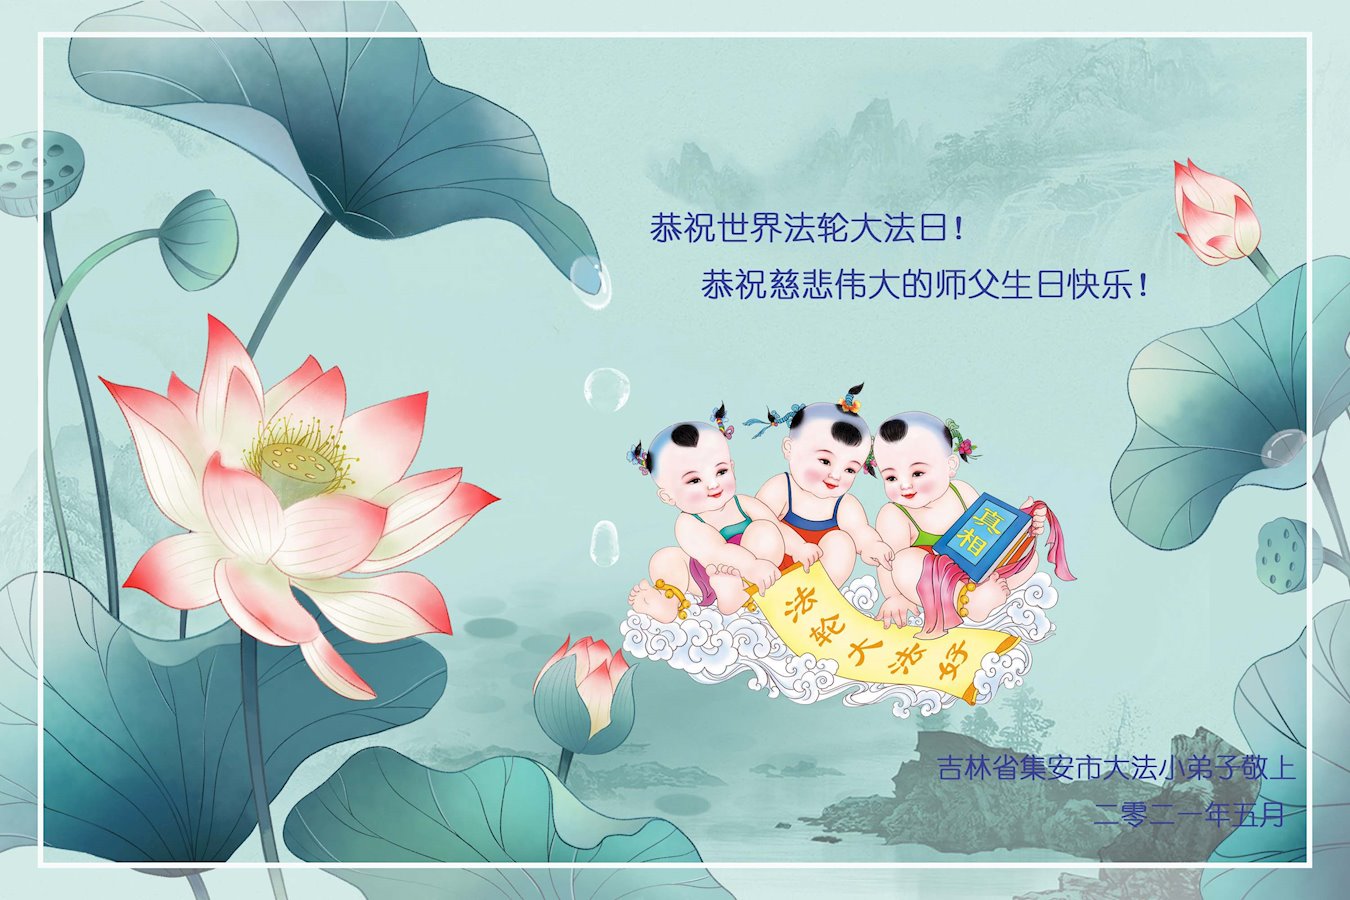 Image for article ​Jóvenes practicantes de Falun Dafa celebran el Día Mundial de Falun Dafa y desean respetuosamente un Feliz Cumpleaños al Maestro Li Hongzhi (22 saludos)